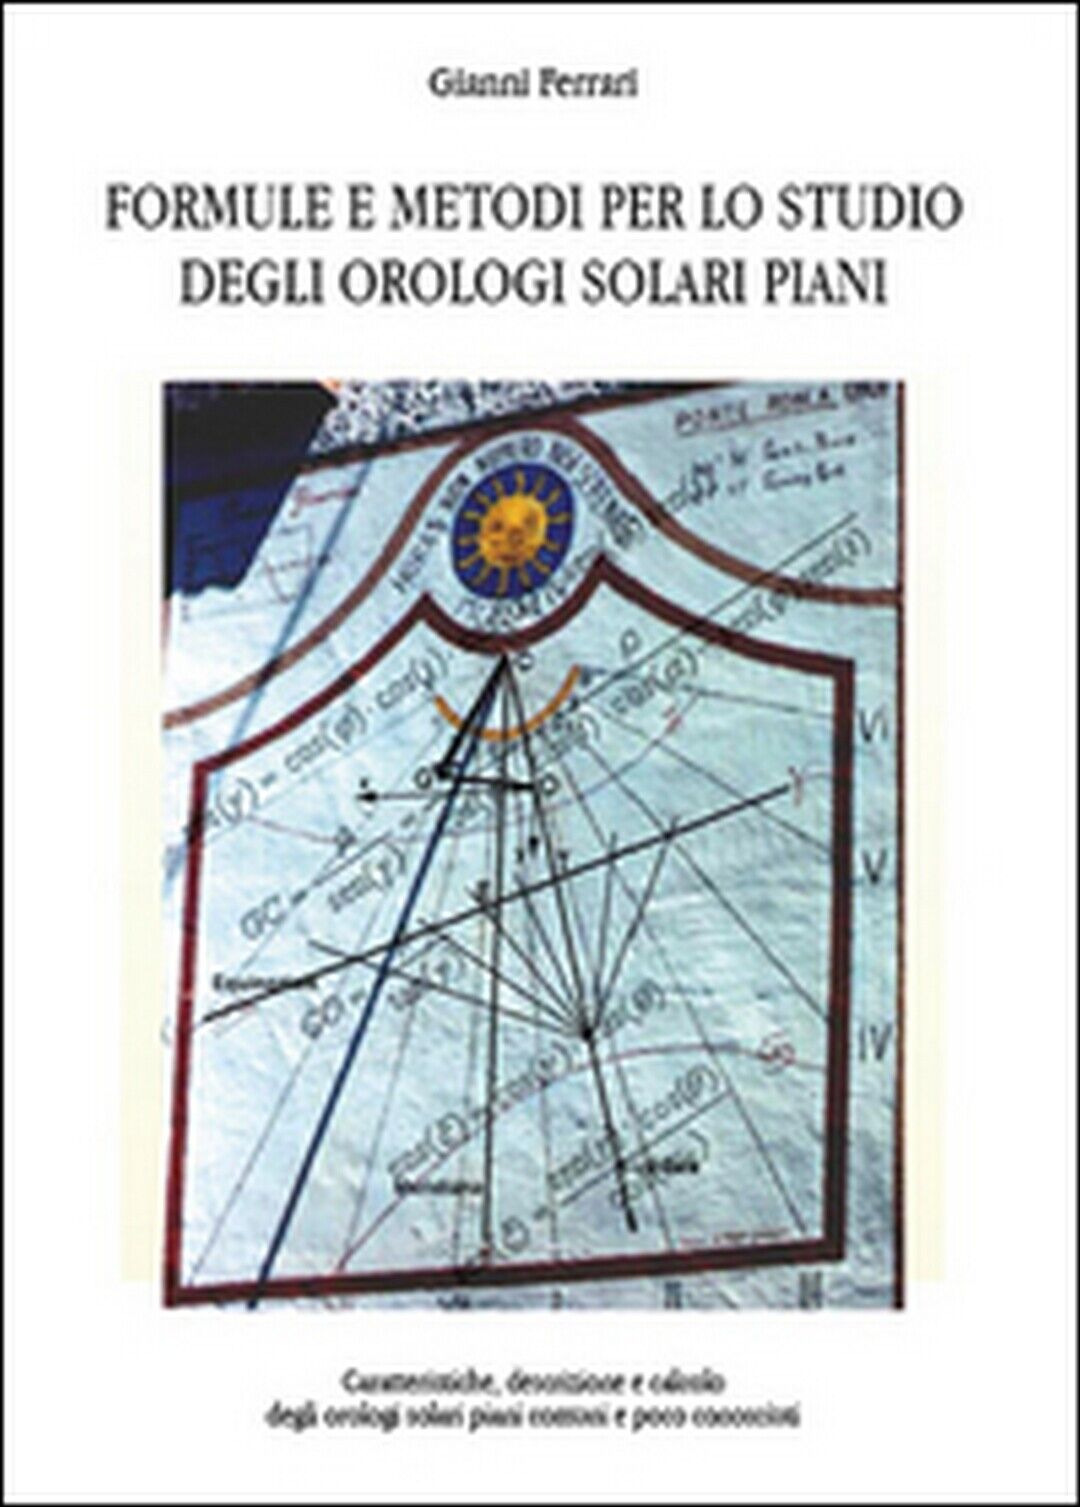 Formule e metodi per lo studio degli orologi solari piani  - Gianni Ferrari